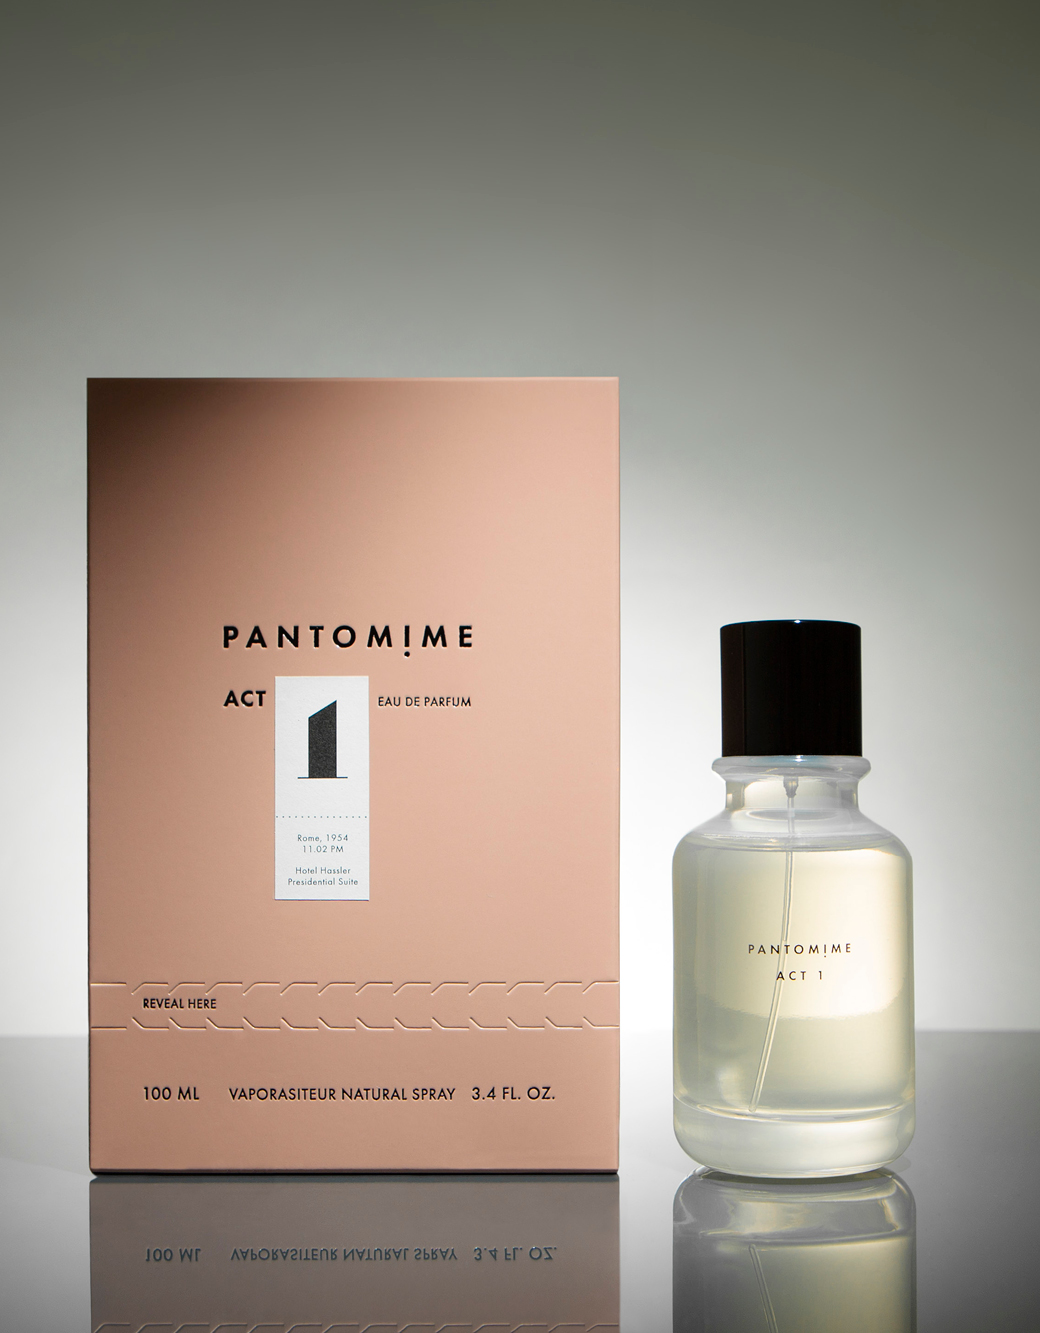 L'immensite by Louis vuitton 3.4 oz Eau De Parfum Spray for Men